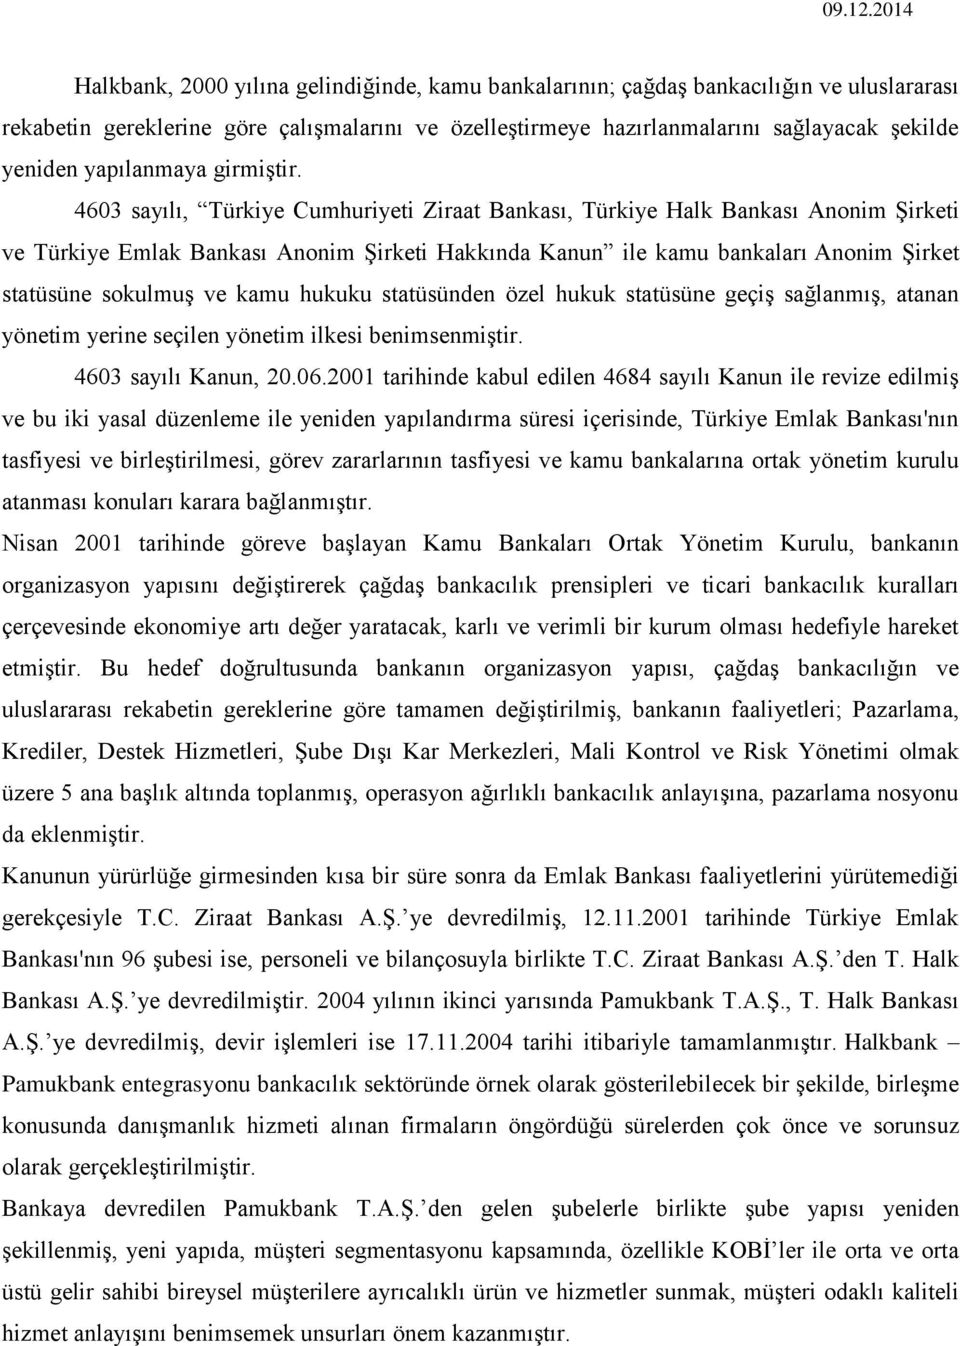 4603 sayılı, Türkiye Cumhuriyeti Ziraat Bankası, Türkiye Halk Bankası Anonim Şirketi ve Türkiye Emlak Bankası Anonim Şirketi Hakkında Kanun ile kamu bankaları Anonim Şirket statüsüne sokulmuş ve kamu